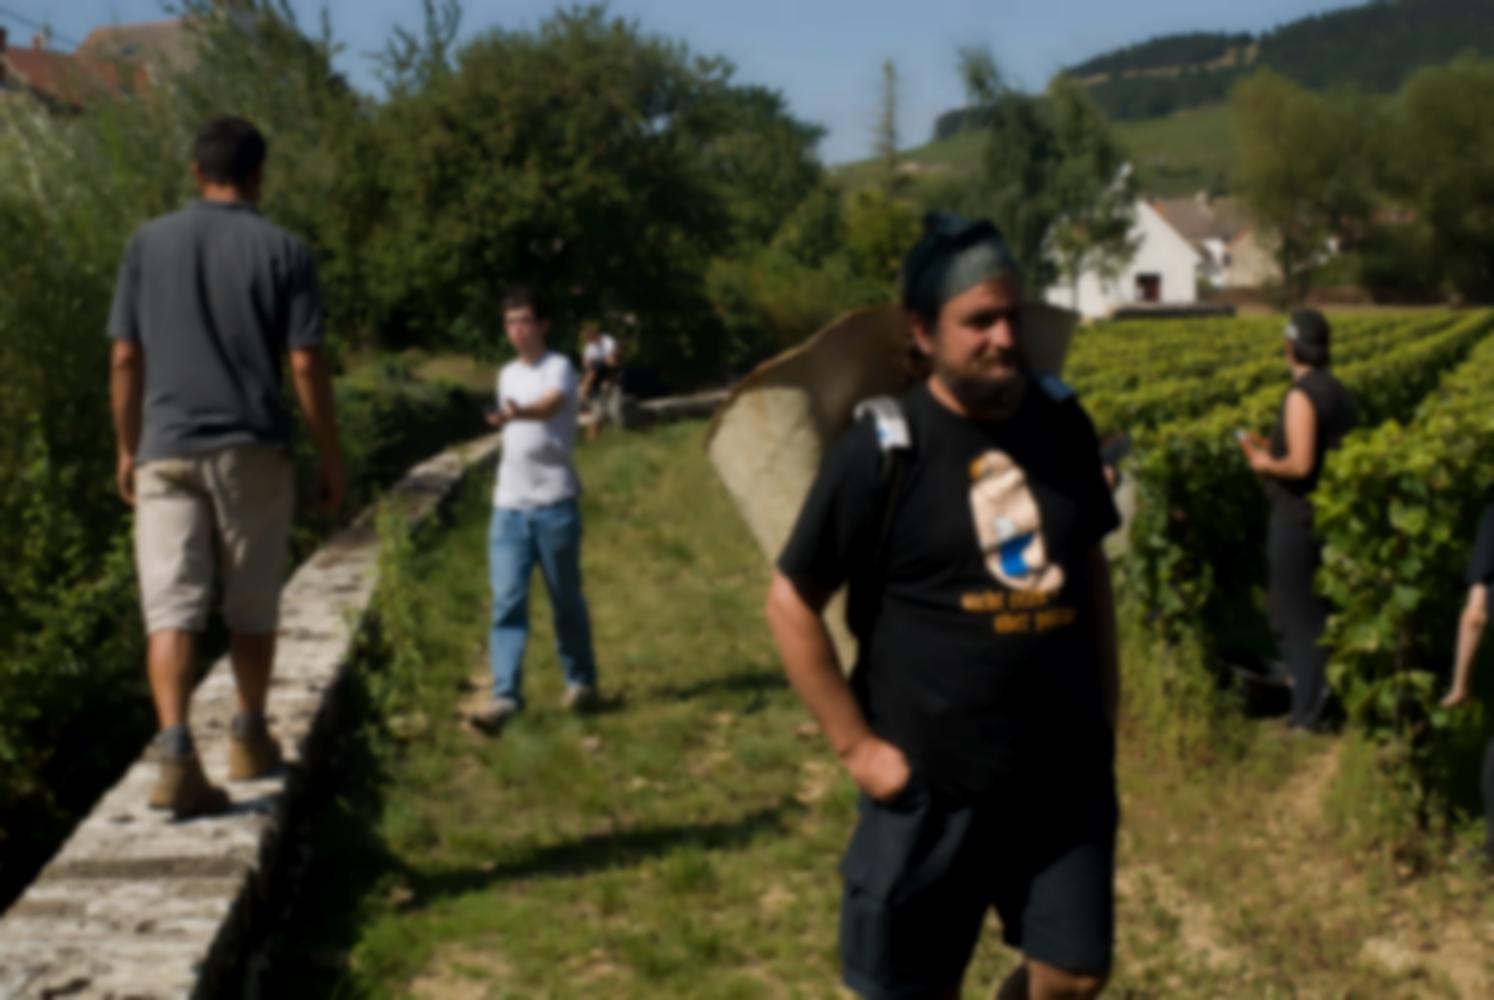 Récolte au clos : James sur le muret, les rangs de vigne, et des vendangeurs, les maisons et collines voisines. Pommard, Bourgogne, septembre 2009.